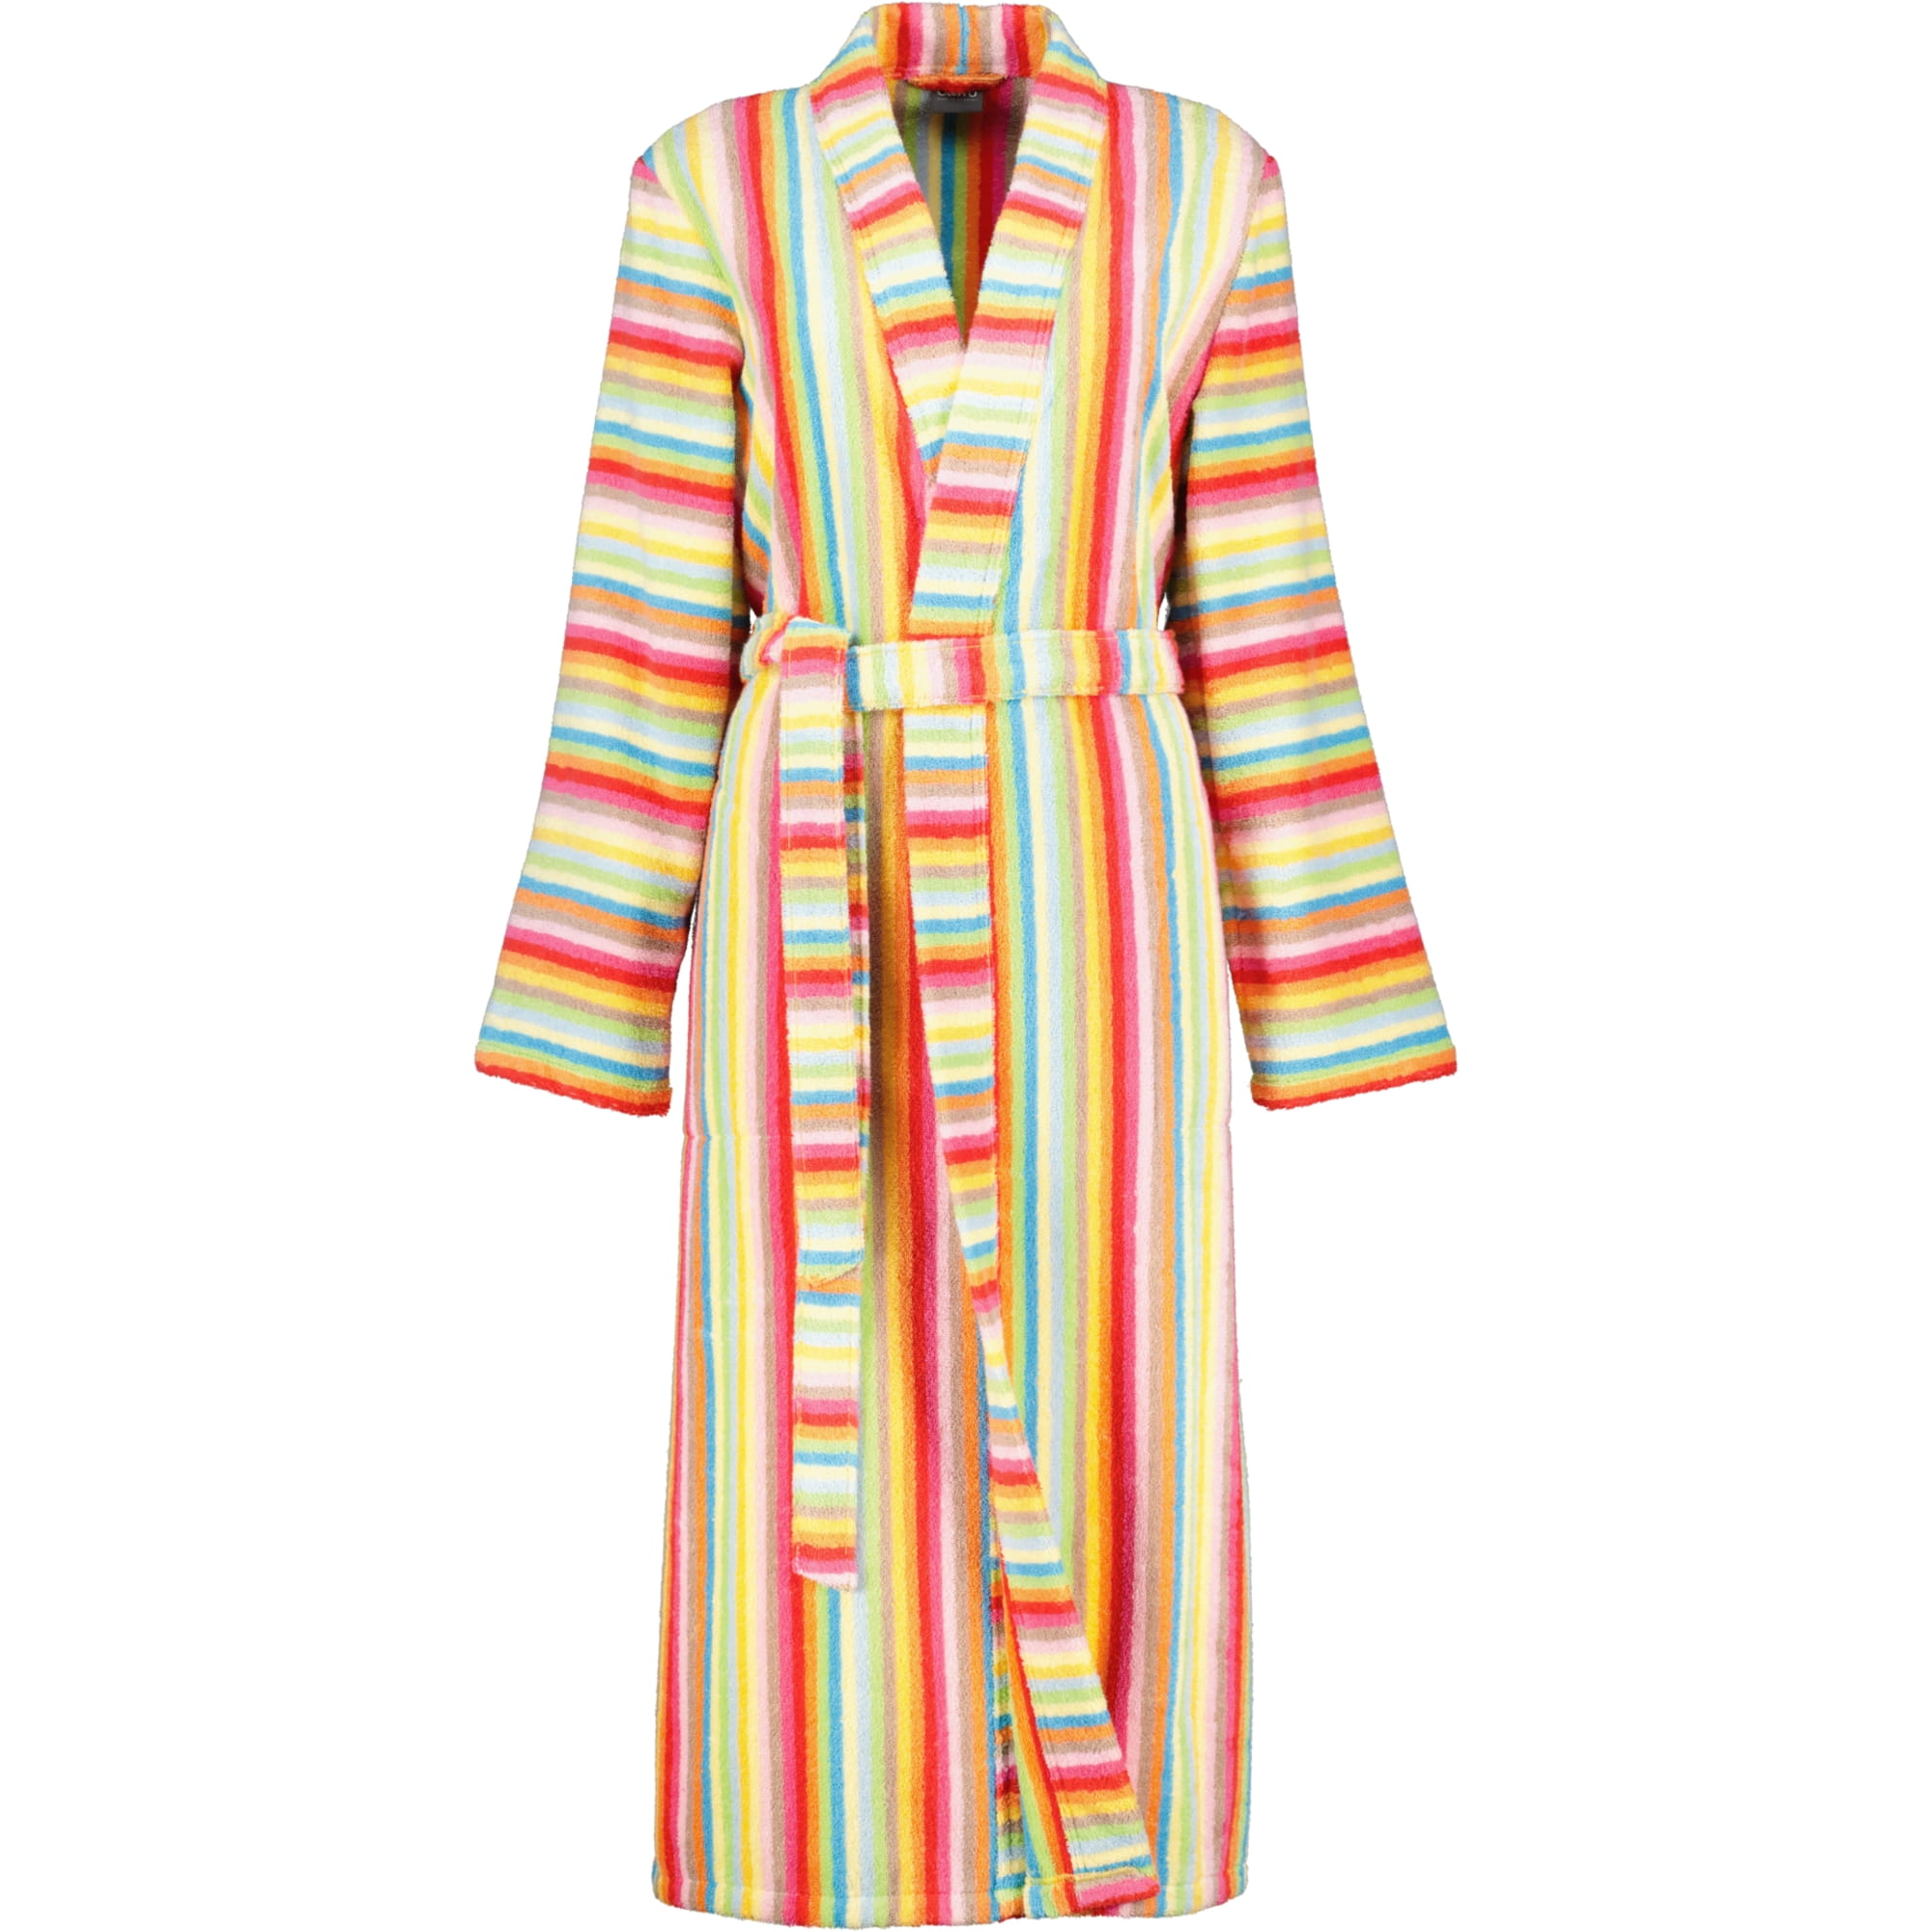 Life Farbe: Cawö | Damen | im 25 Cawö Bademantel - 7080 - Überblick Bademantel Kimono Alles Style - - multicolor |